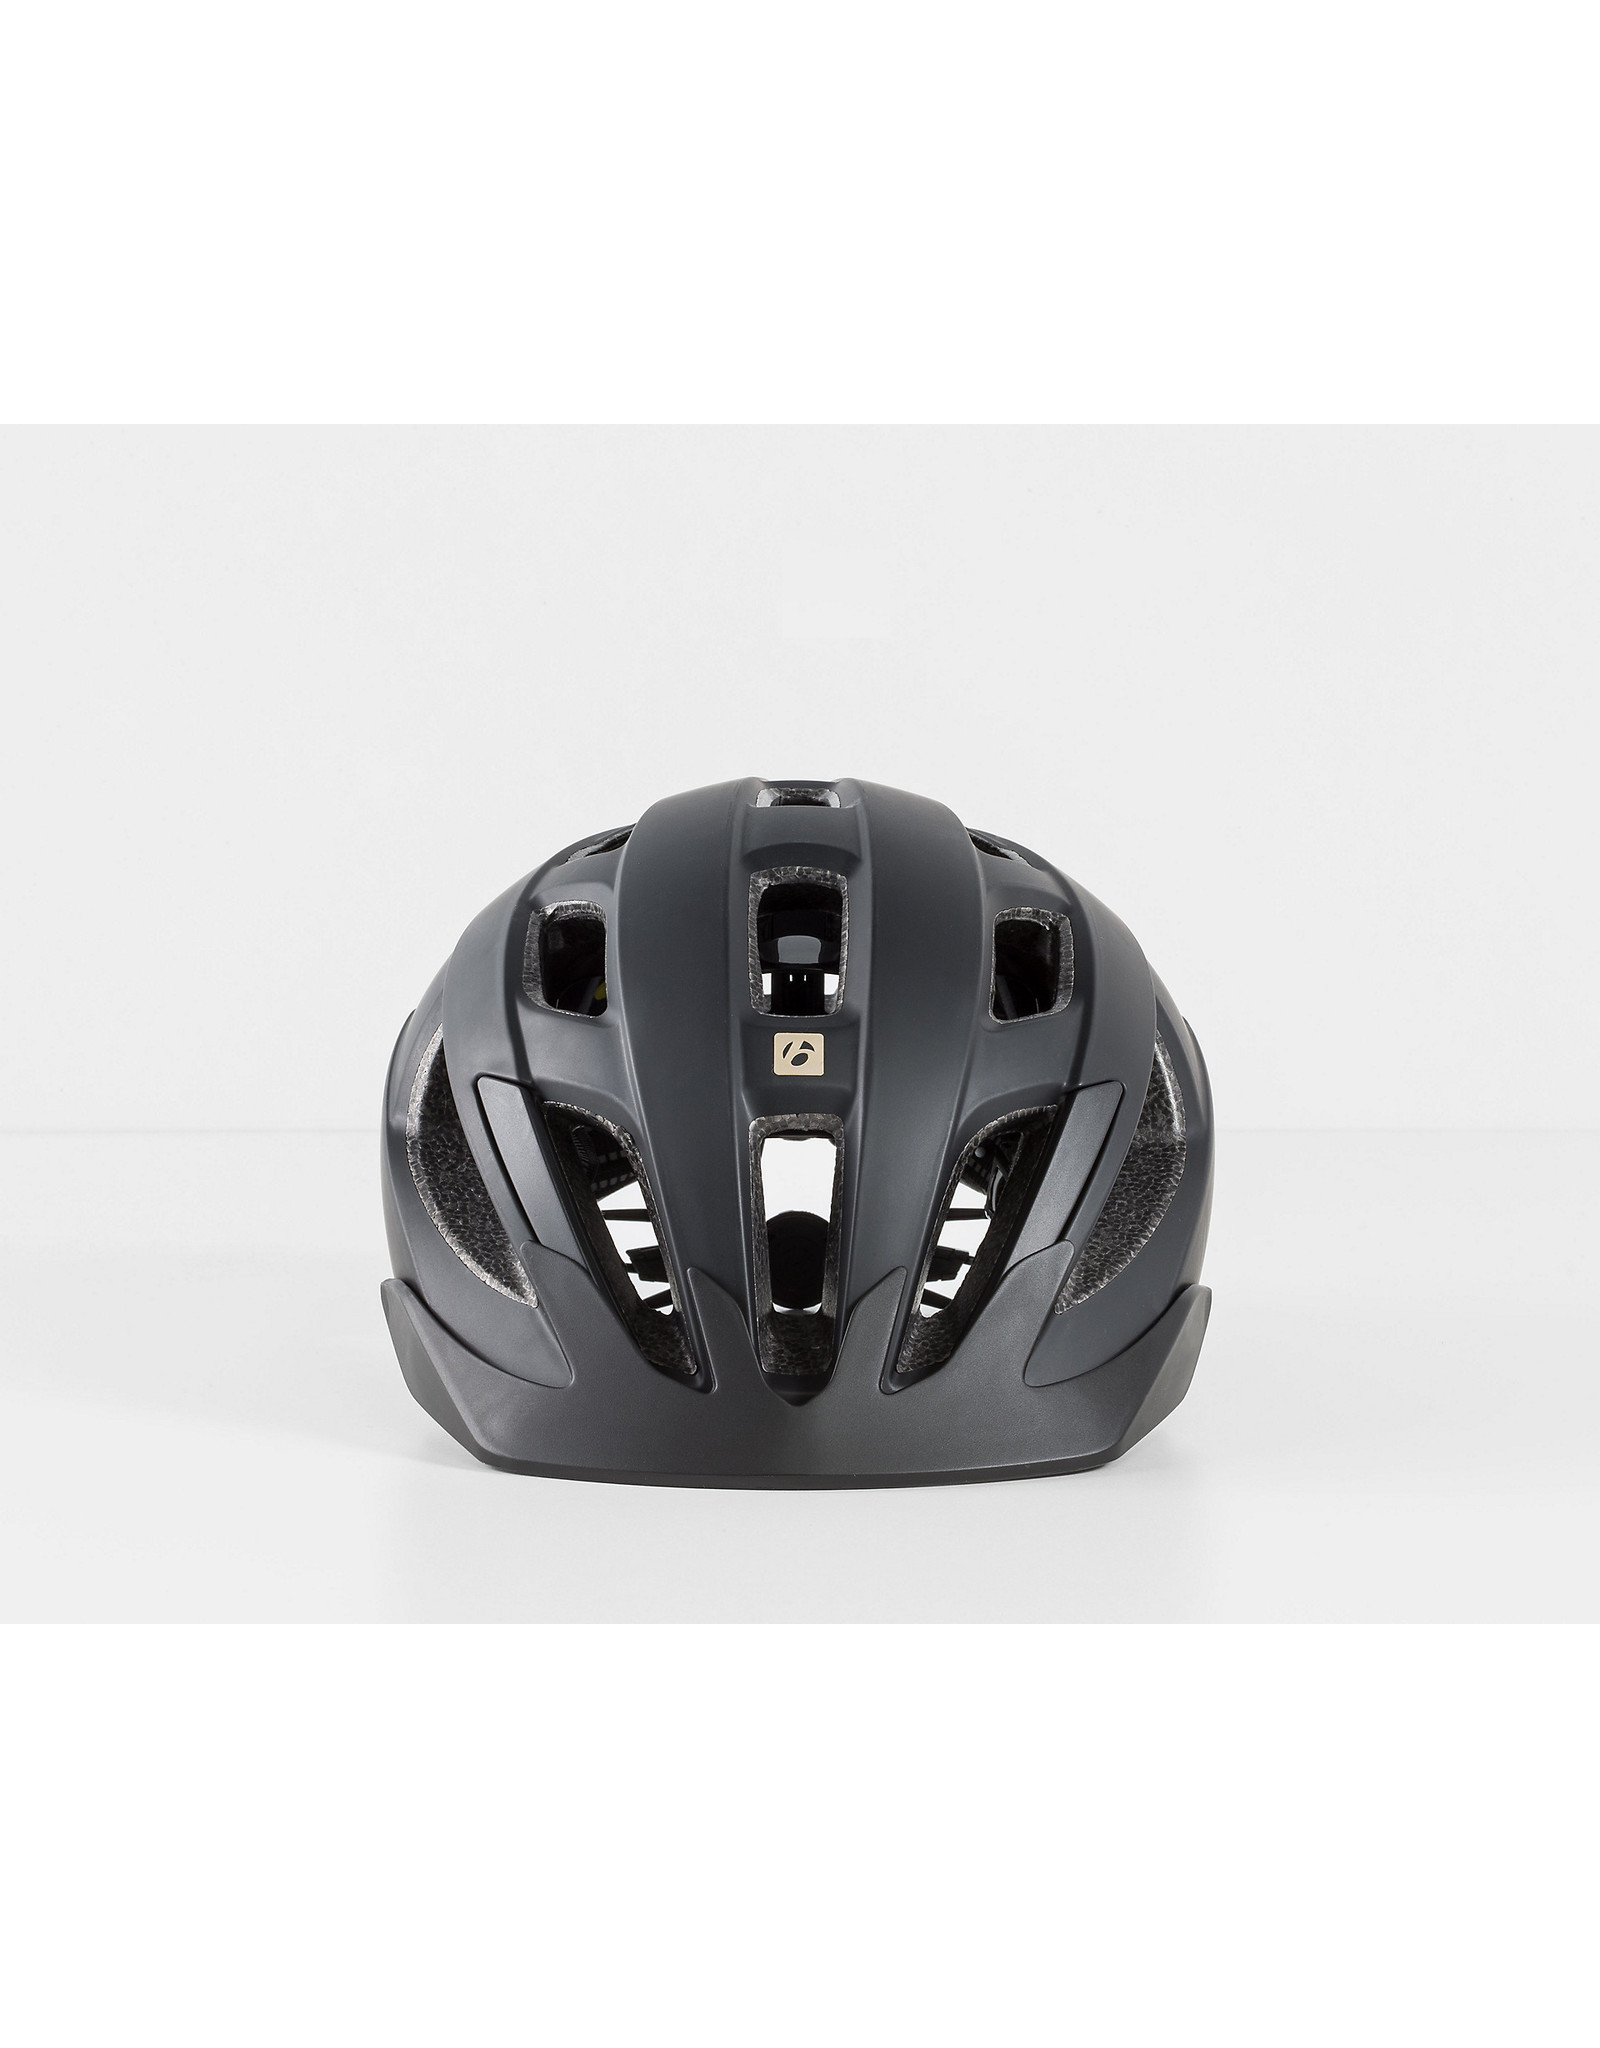 BONTRAGER Bontrager Solstice MIPS Bike Helmet - S/M